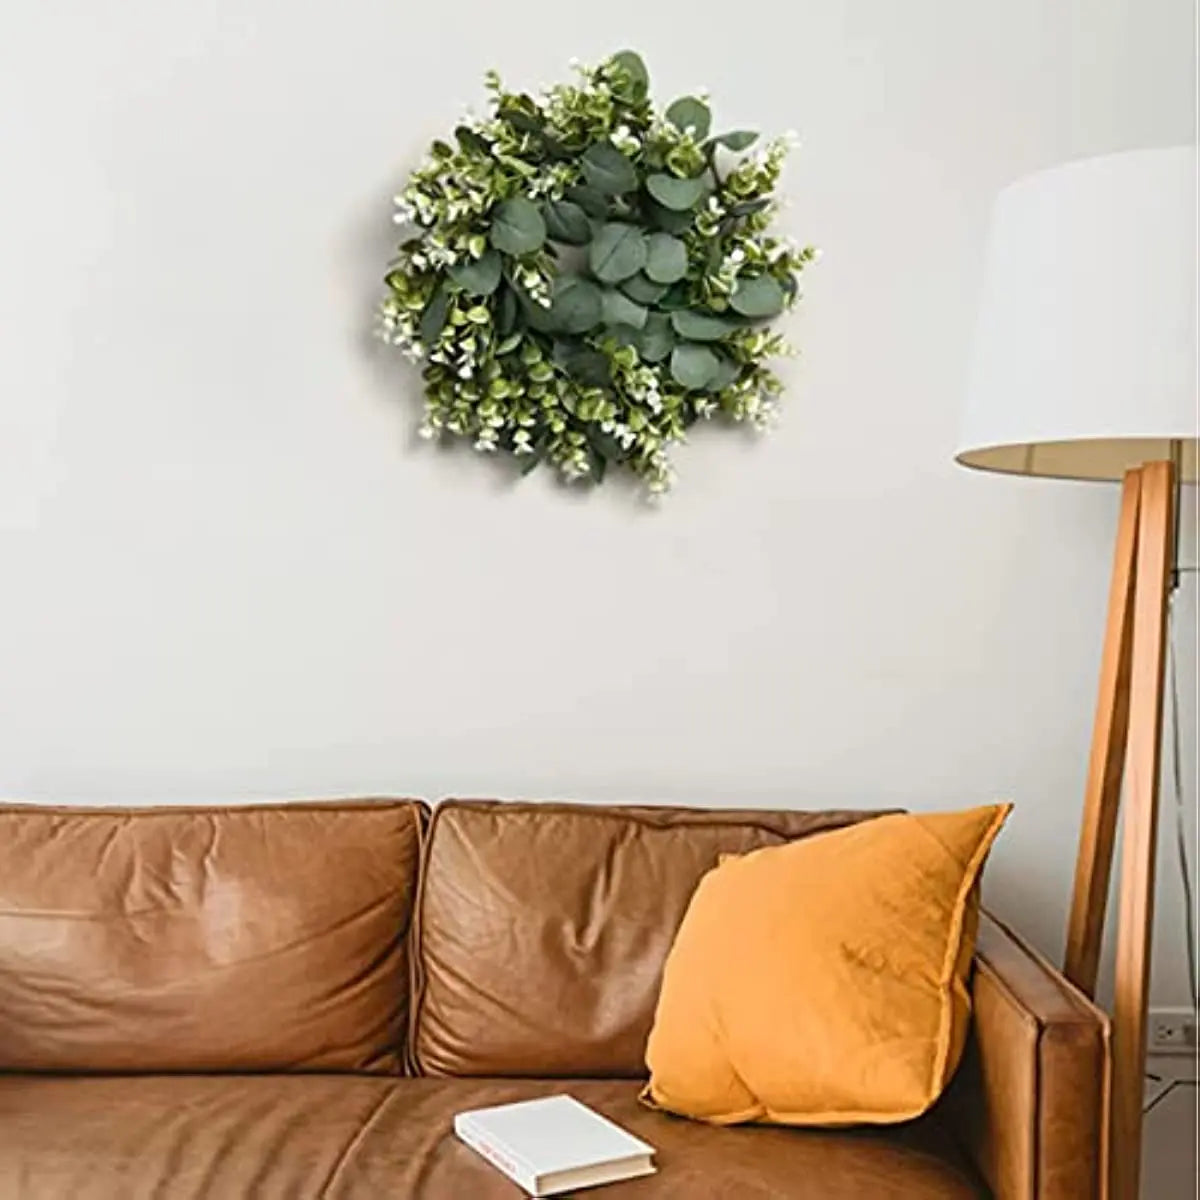 https://creationsbychrisandcarlos.store/products/35cm-eucalyptus-wreath-front-door-wreath-green-leaves-wreath-spring-door-wreath-outdoor-artificial-greenery-hanging-wreath